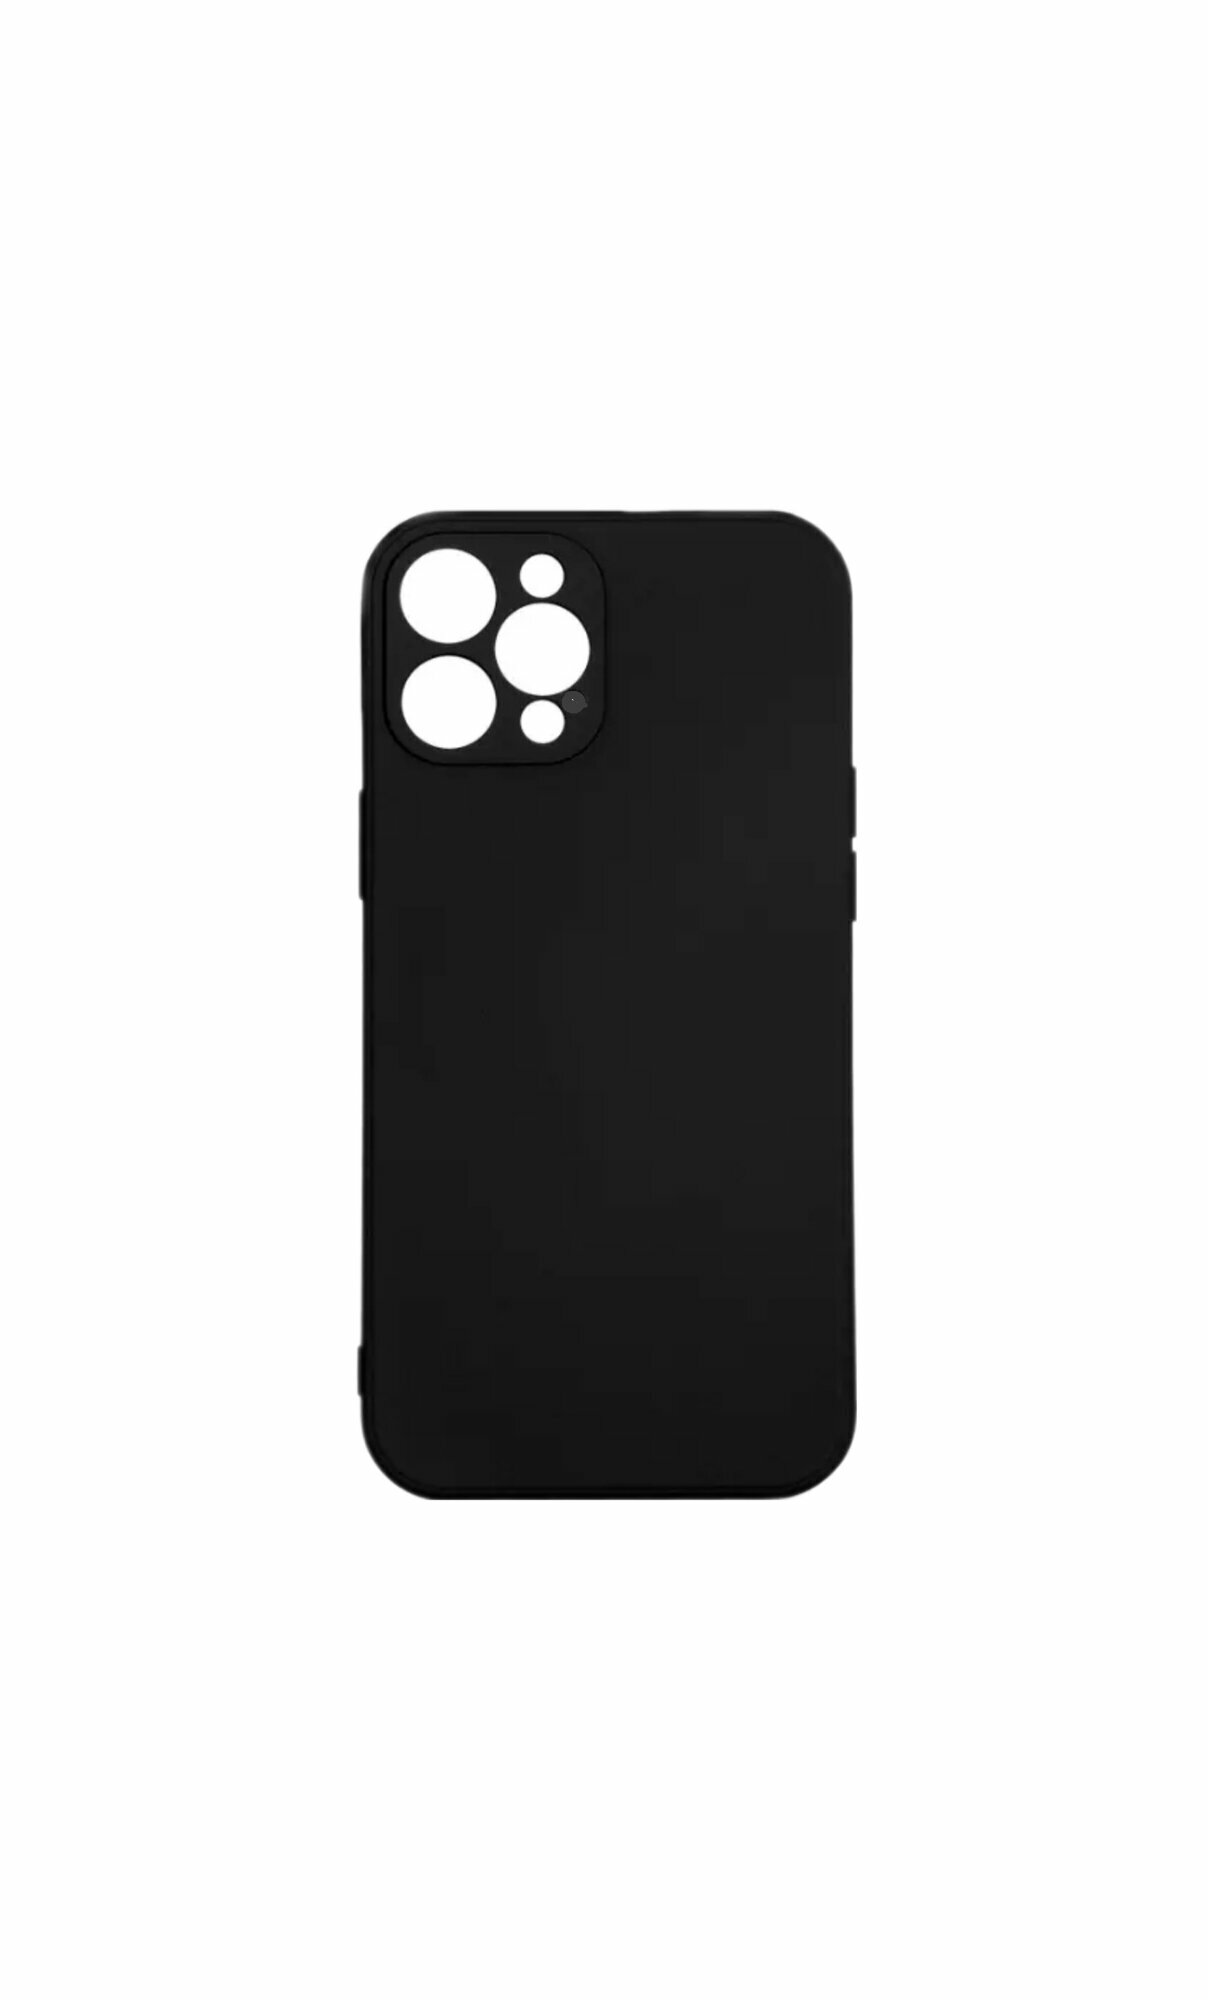 IPhone 11 pro силиконовый чёрный чехол, айфон 11 про